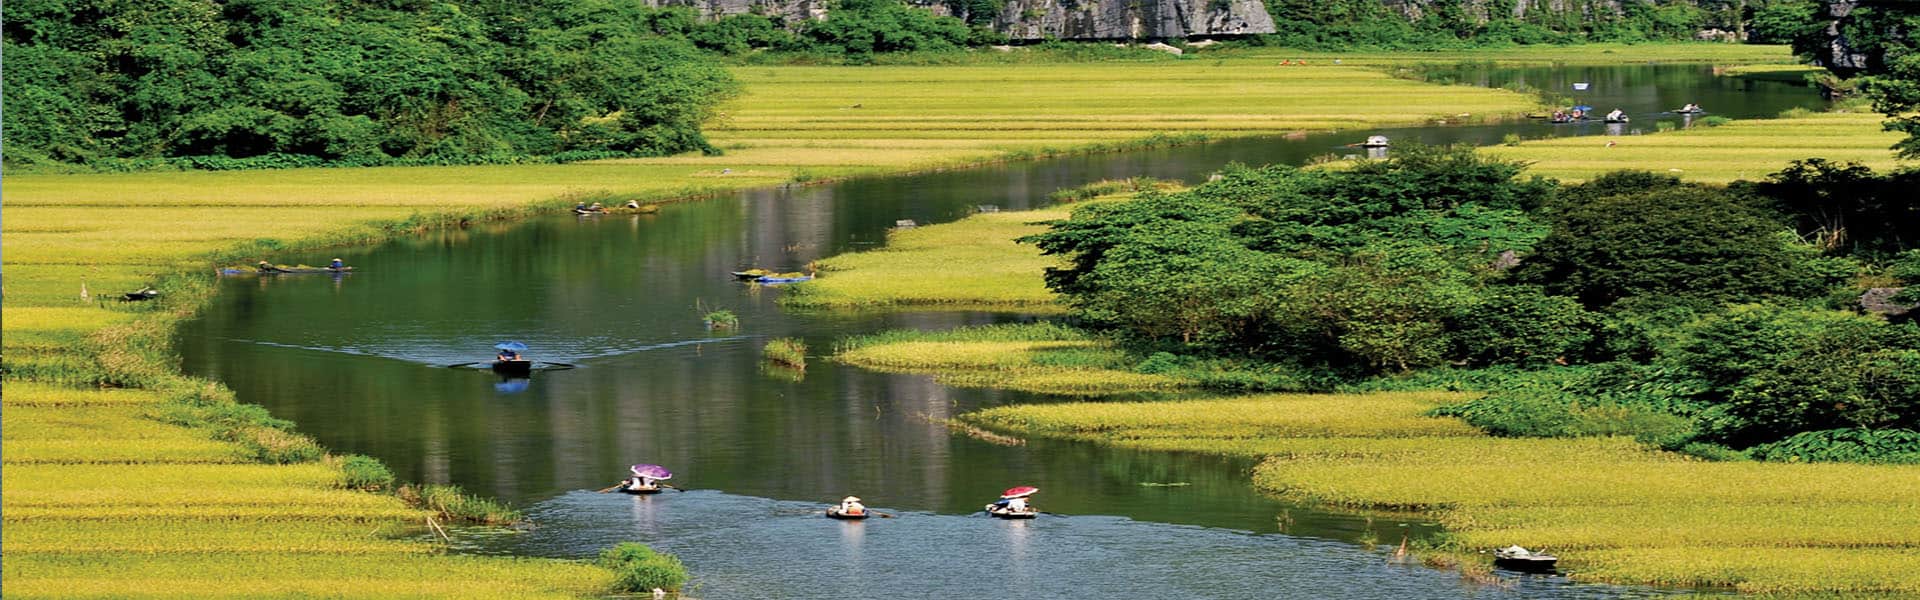 Patrimoines mondiaux de l’UNESCO au Vietnam